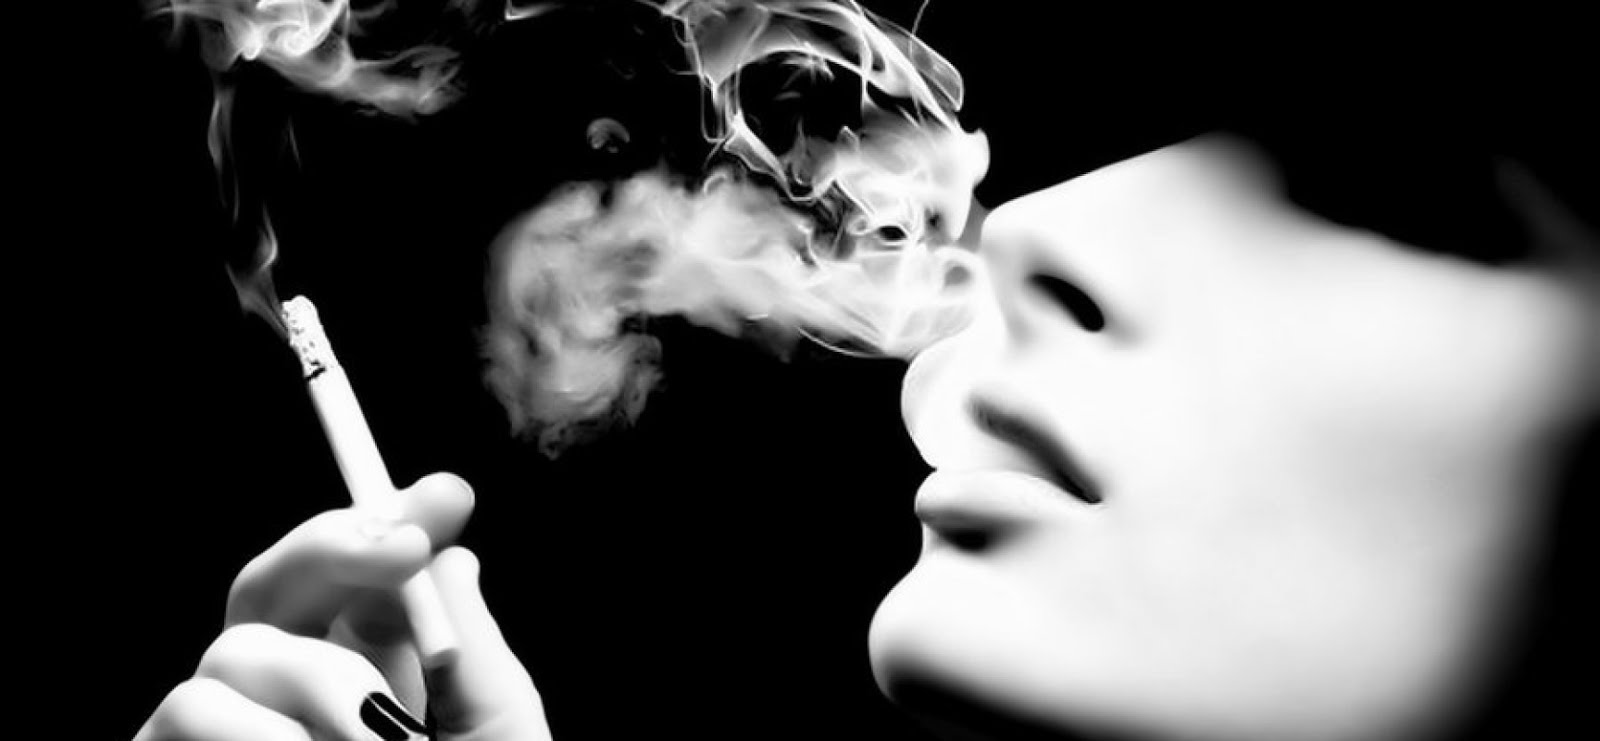 Дым сигарет минус. Дым сигарет обои. Дым сигарет в виде черепа. Обои с сигаретами. Классные обои с дымом сигарет.